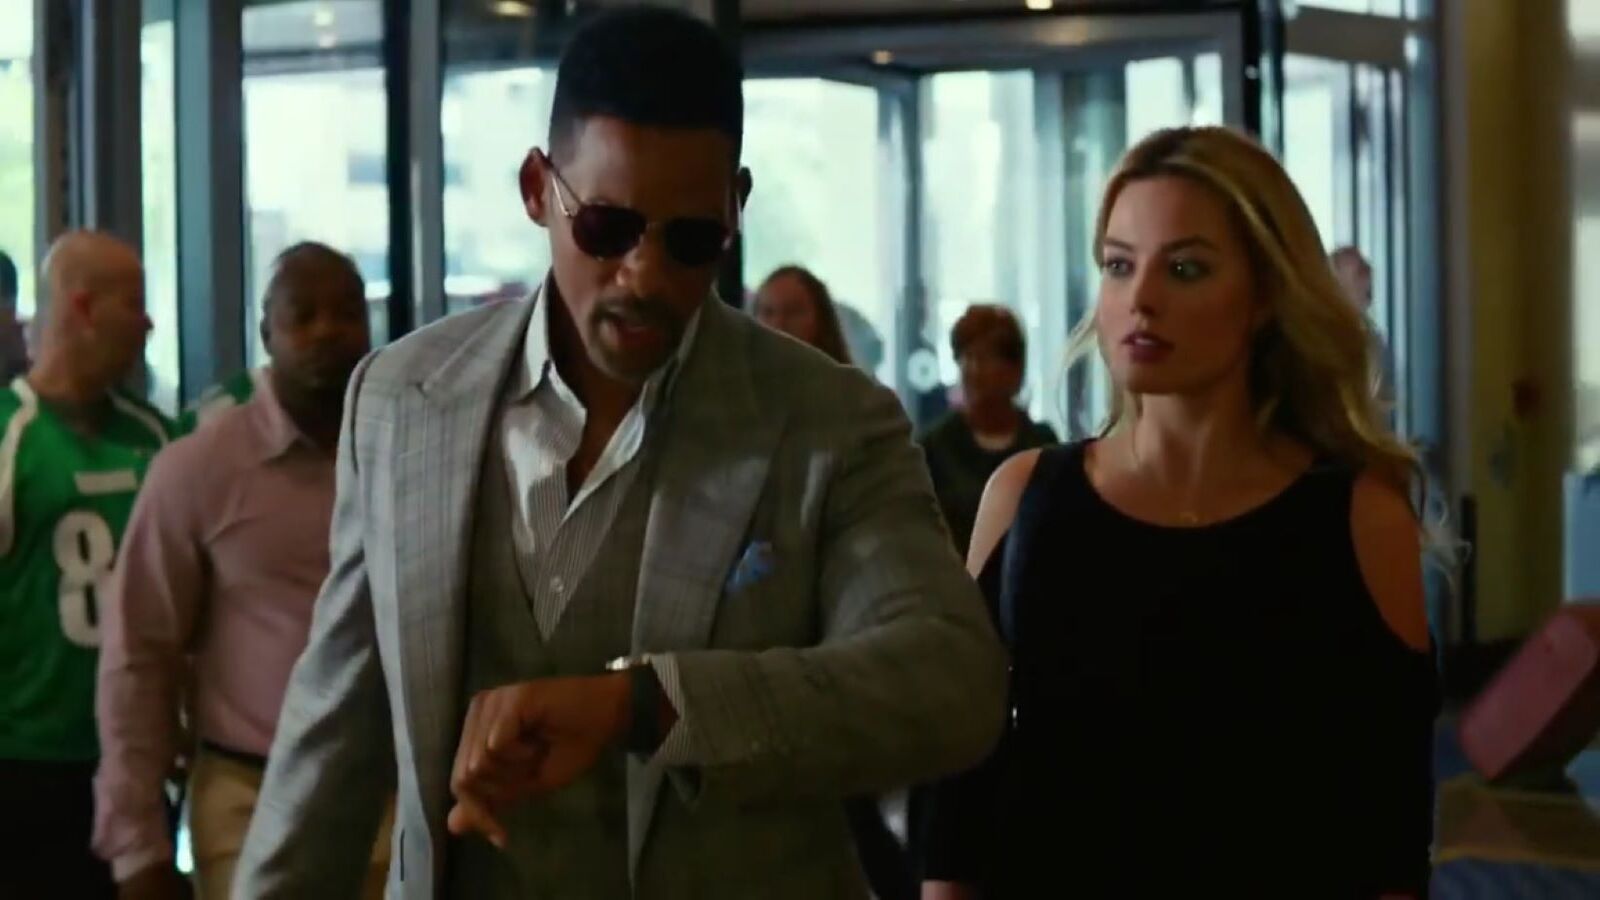 Focus - Niente è come sembra: Will Smith protagonista del film su Mediaset 20. Scopri trama e cast!